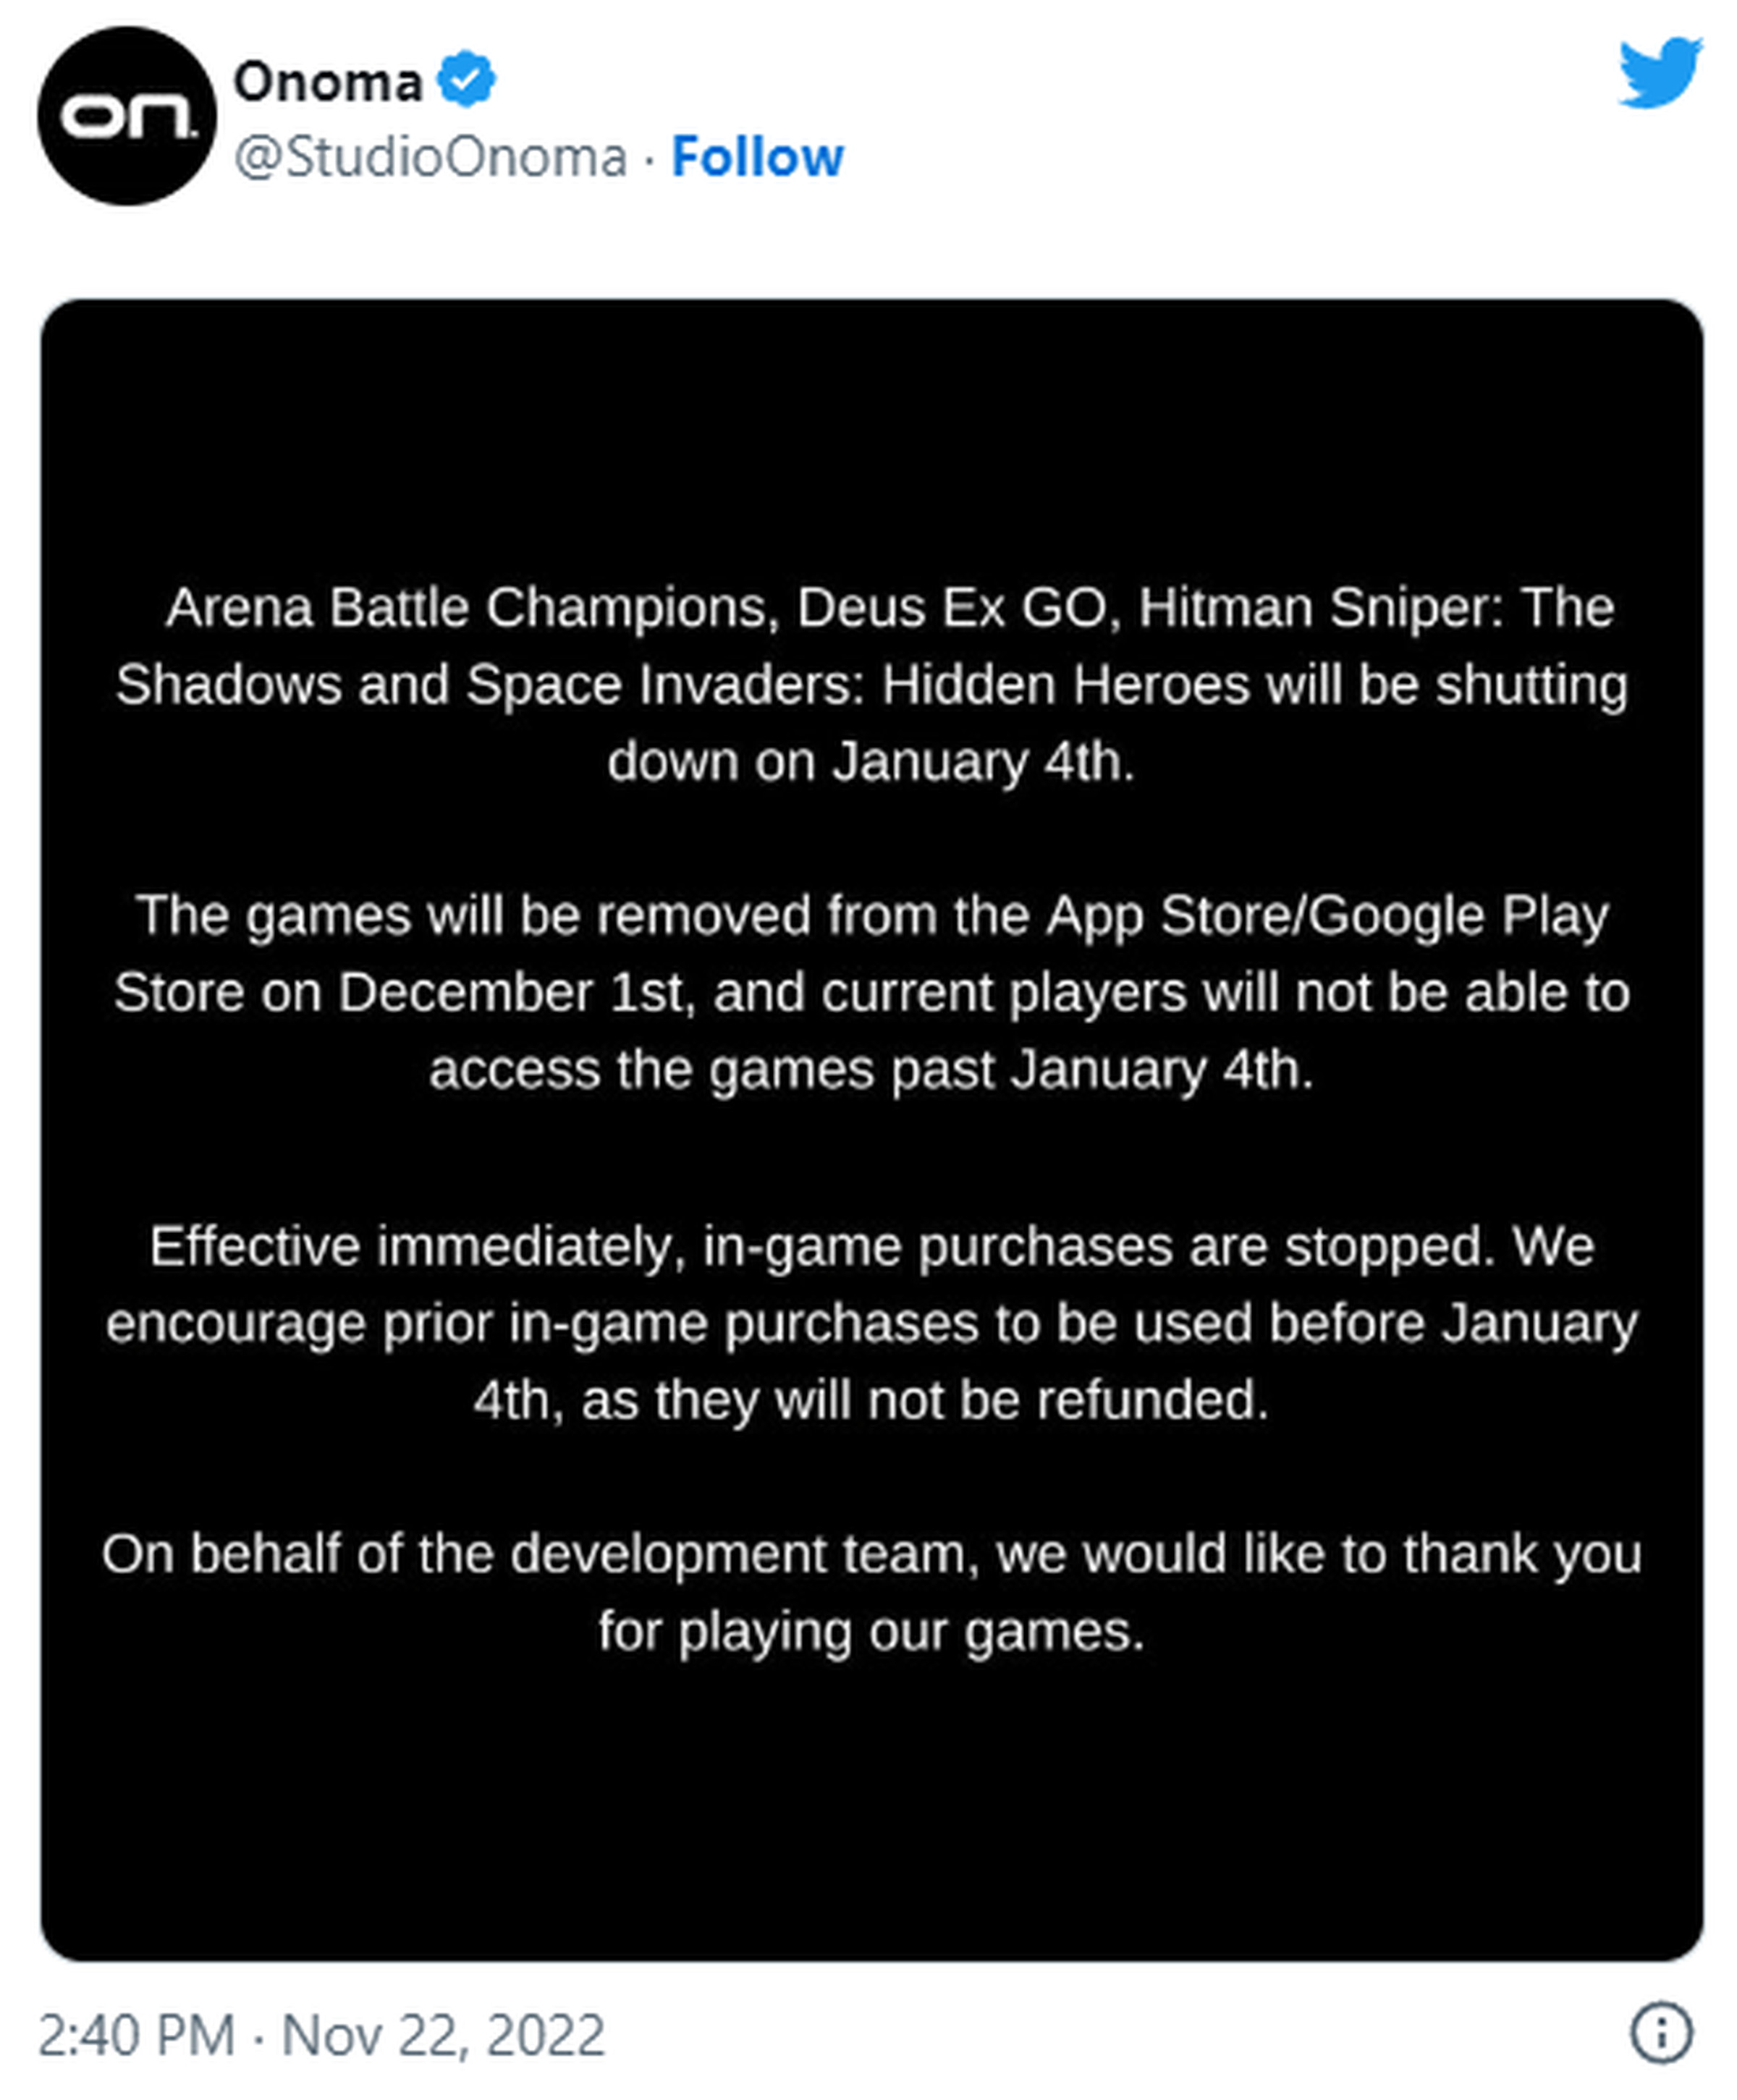 o tweet explica que não haverá reembolso para jogadores e os jogos serão encerrados em 4 de janeiro